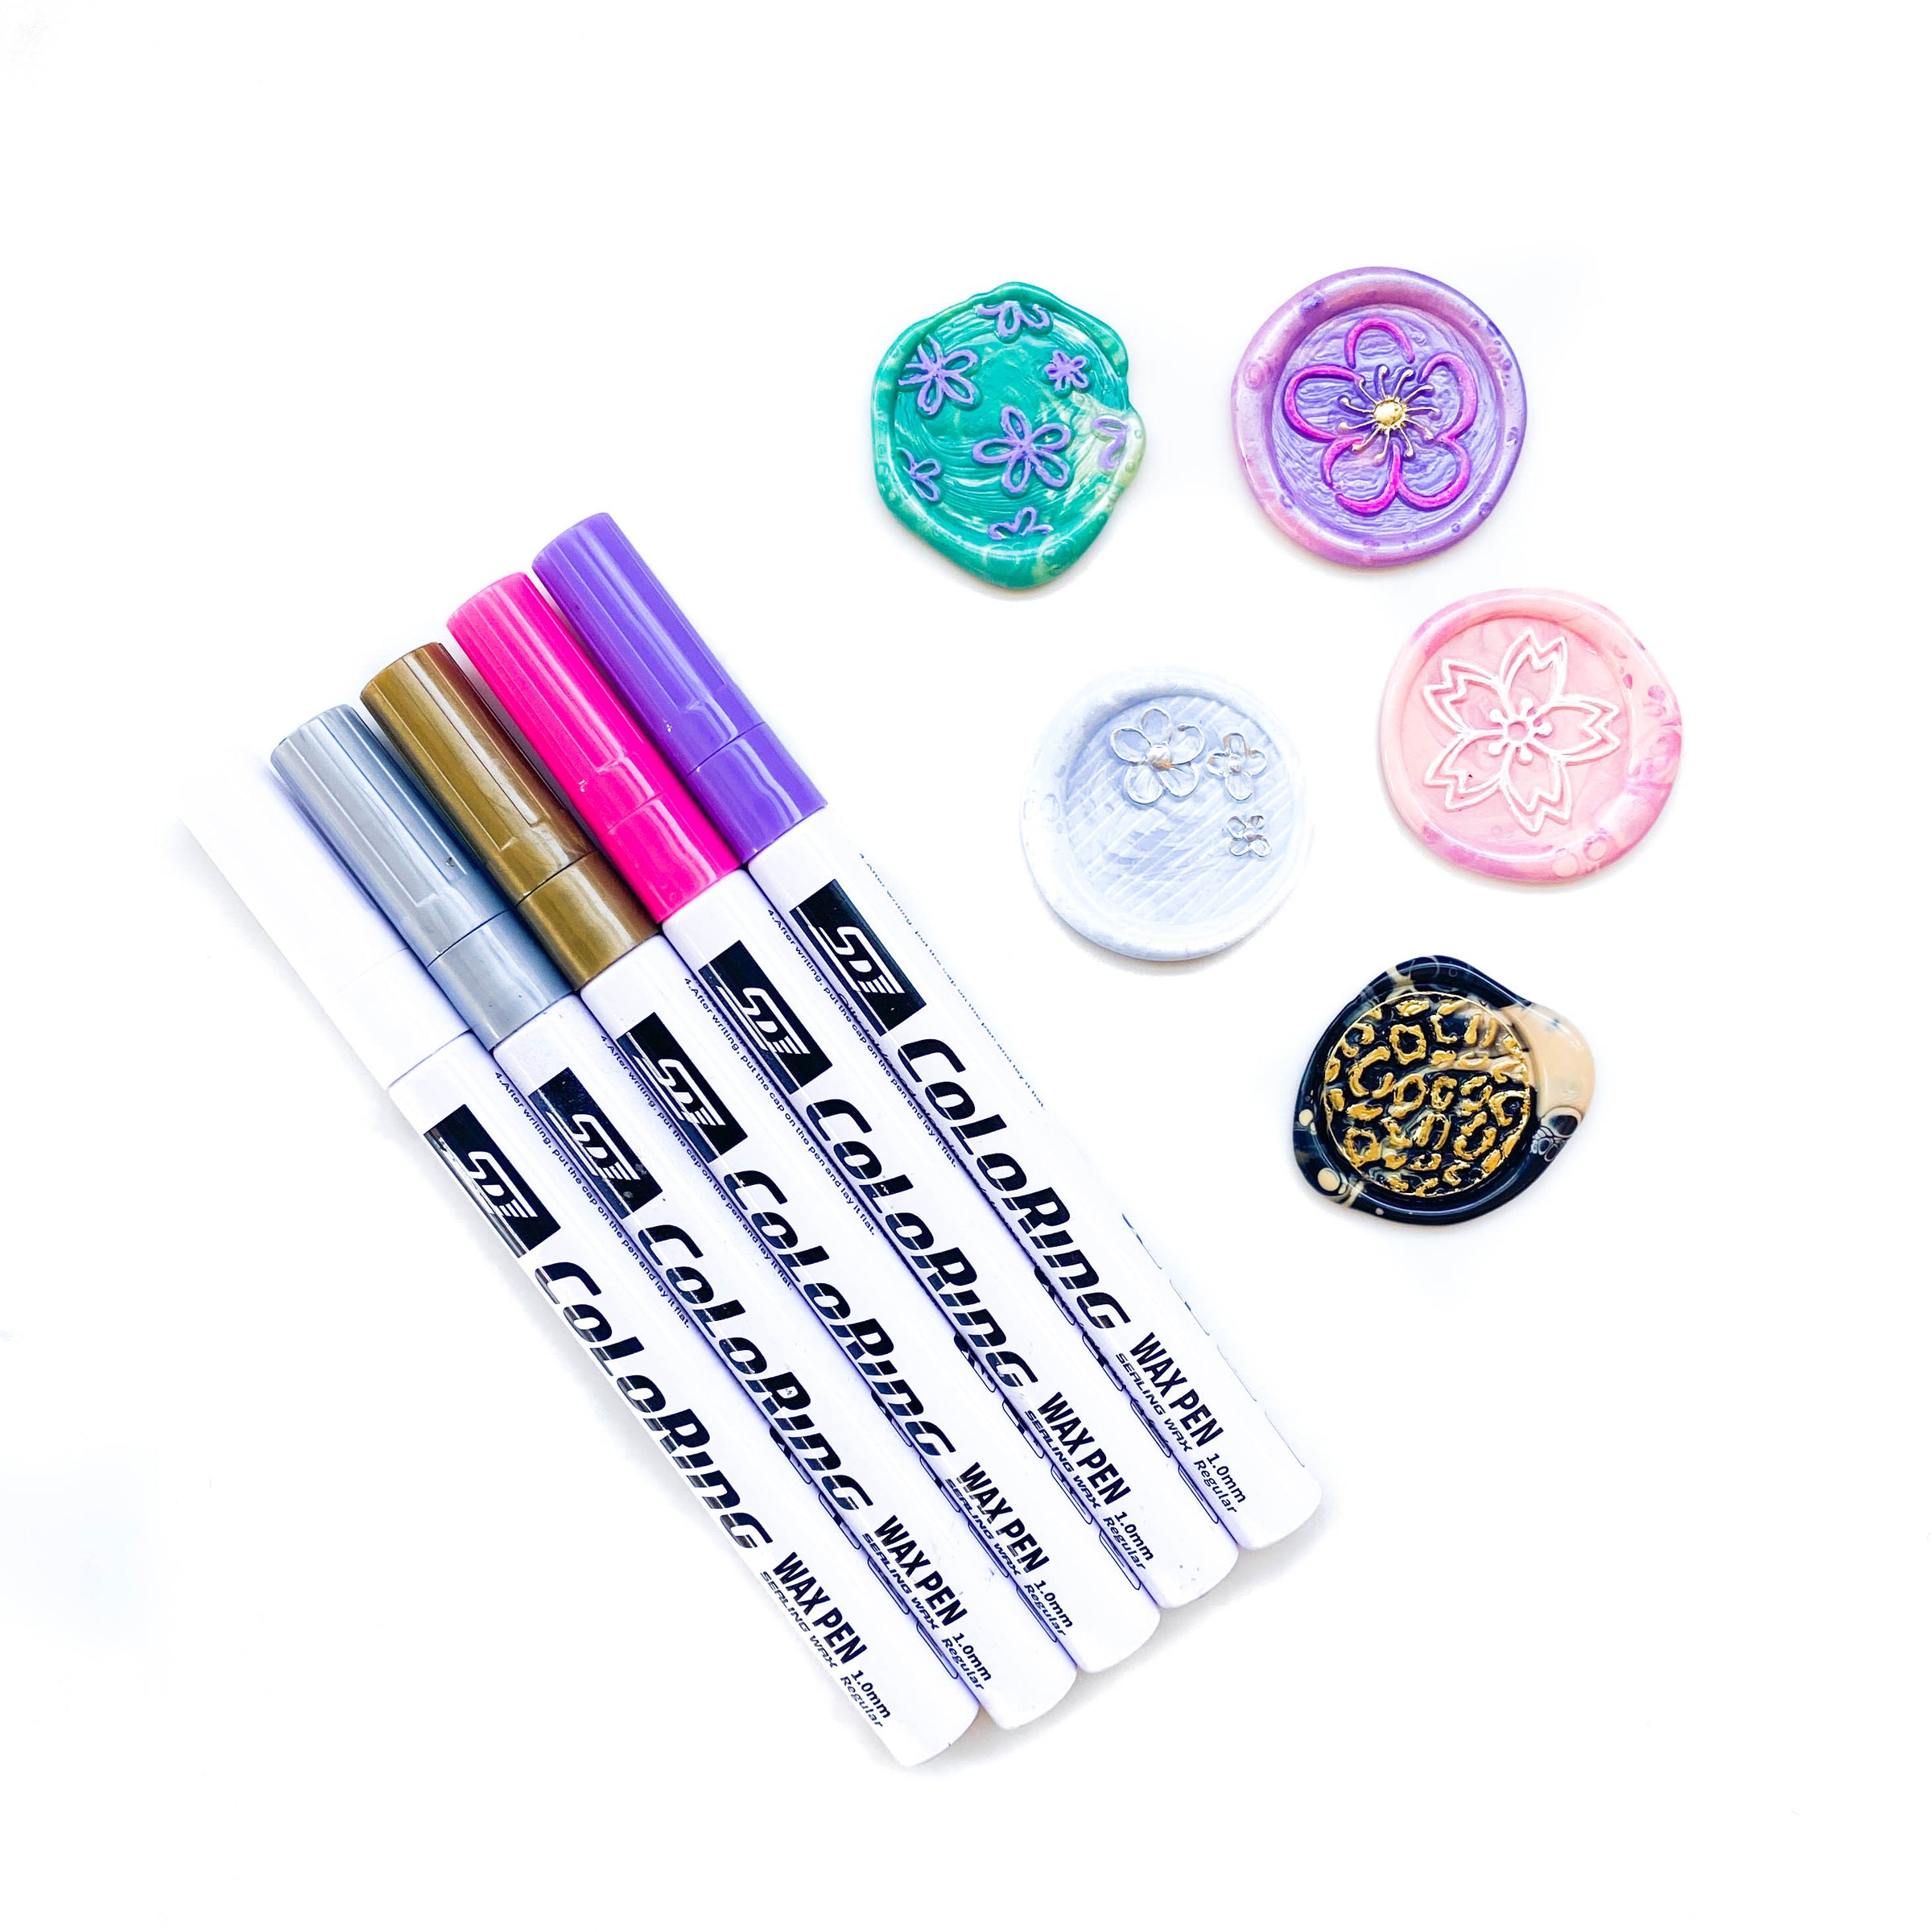 Sakura Metallic Highlight Painting Pen Marker - Wax Seal